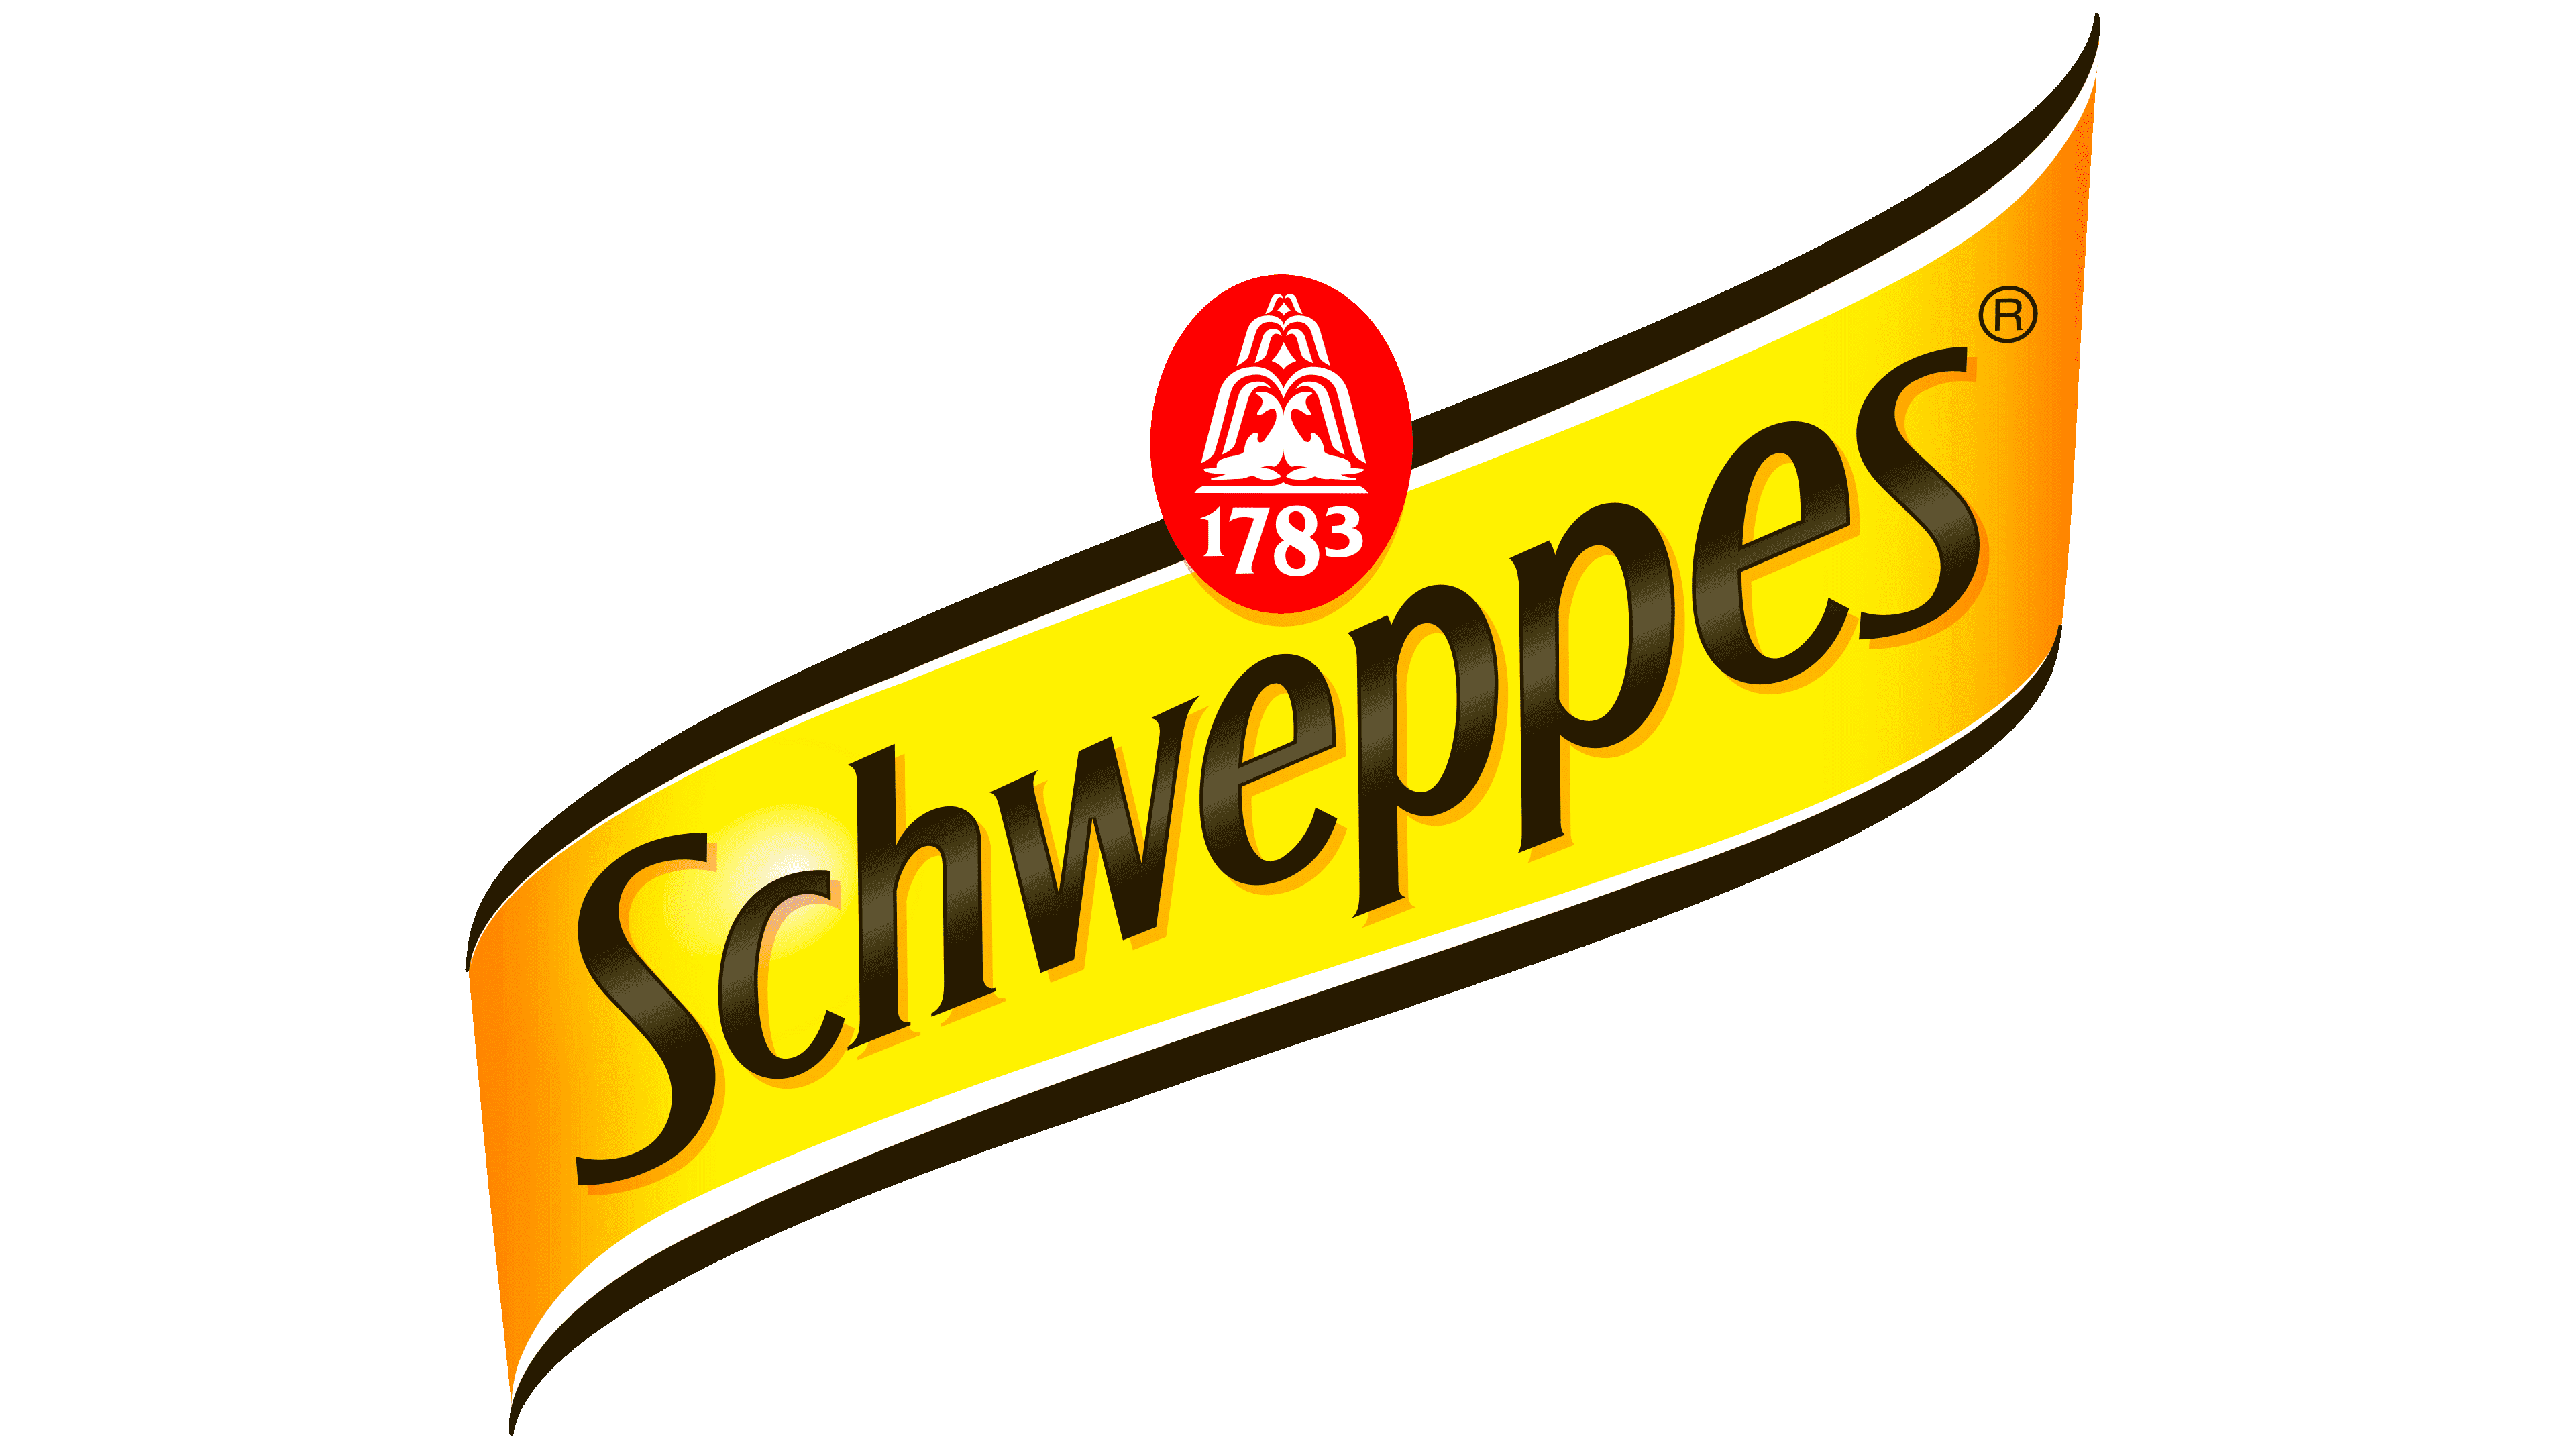 schweppes logo history